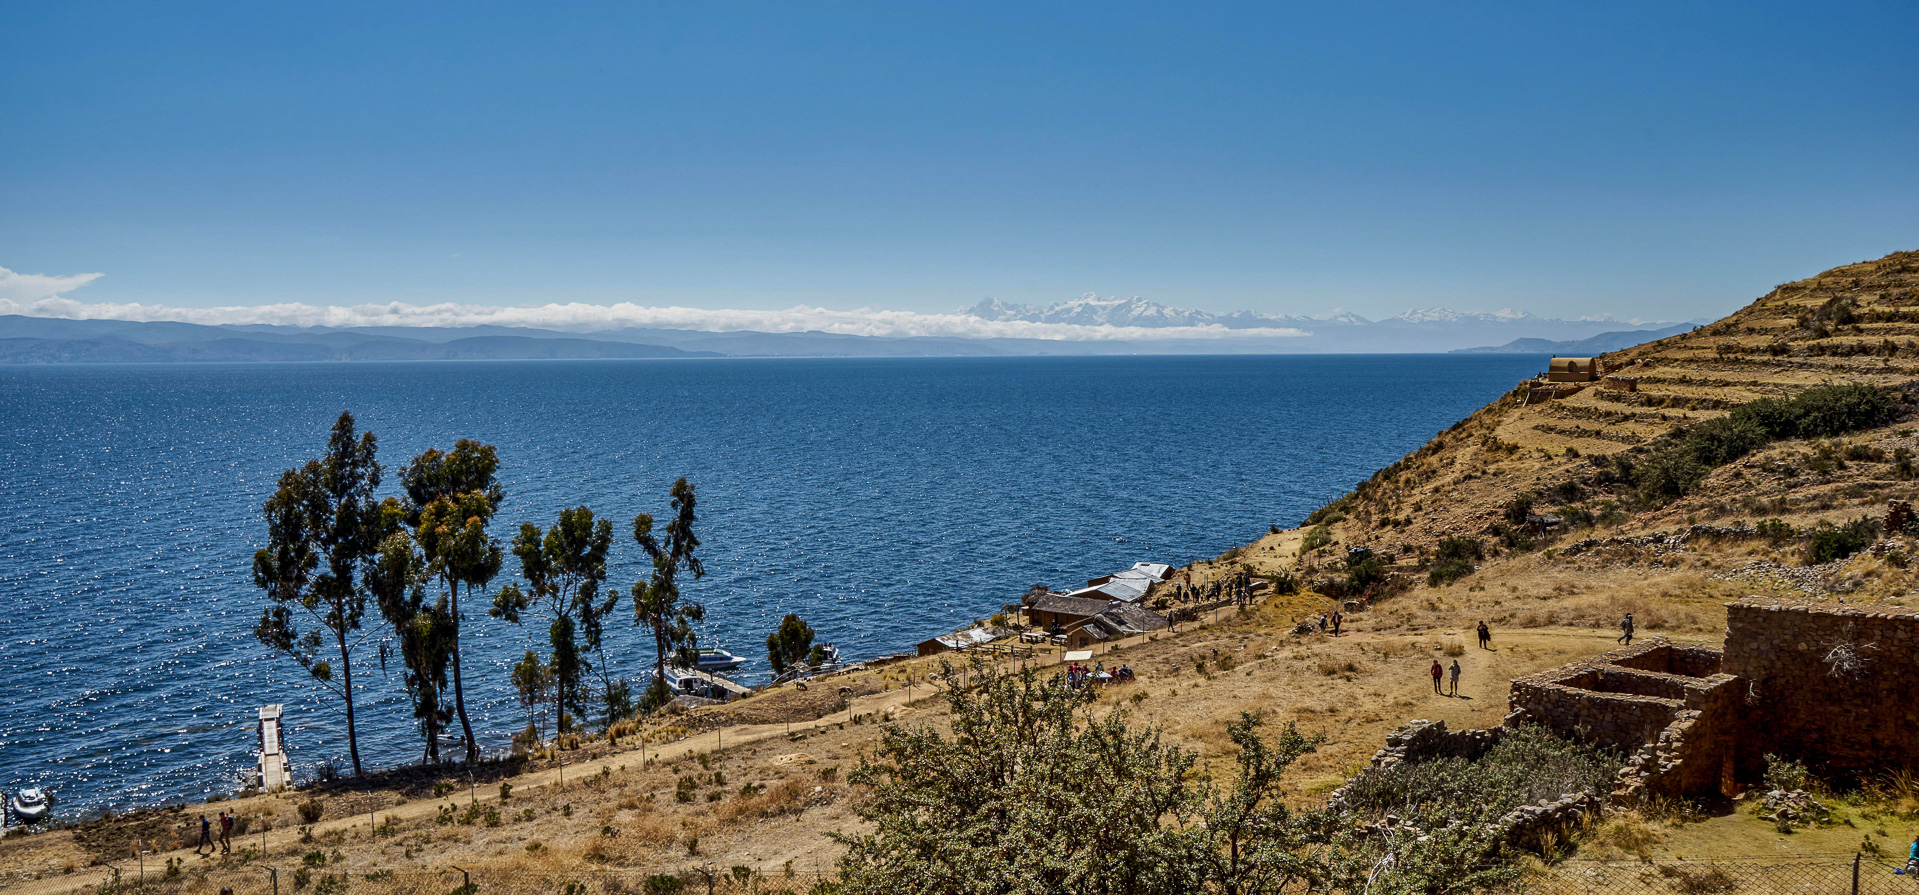 Ein der beiden bekannten Inka-Inseln im Titicacasee mit der Cordillera Real im Hintergrund.